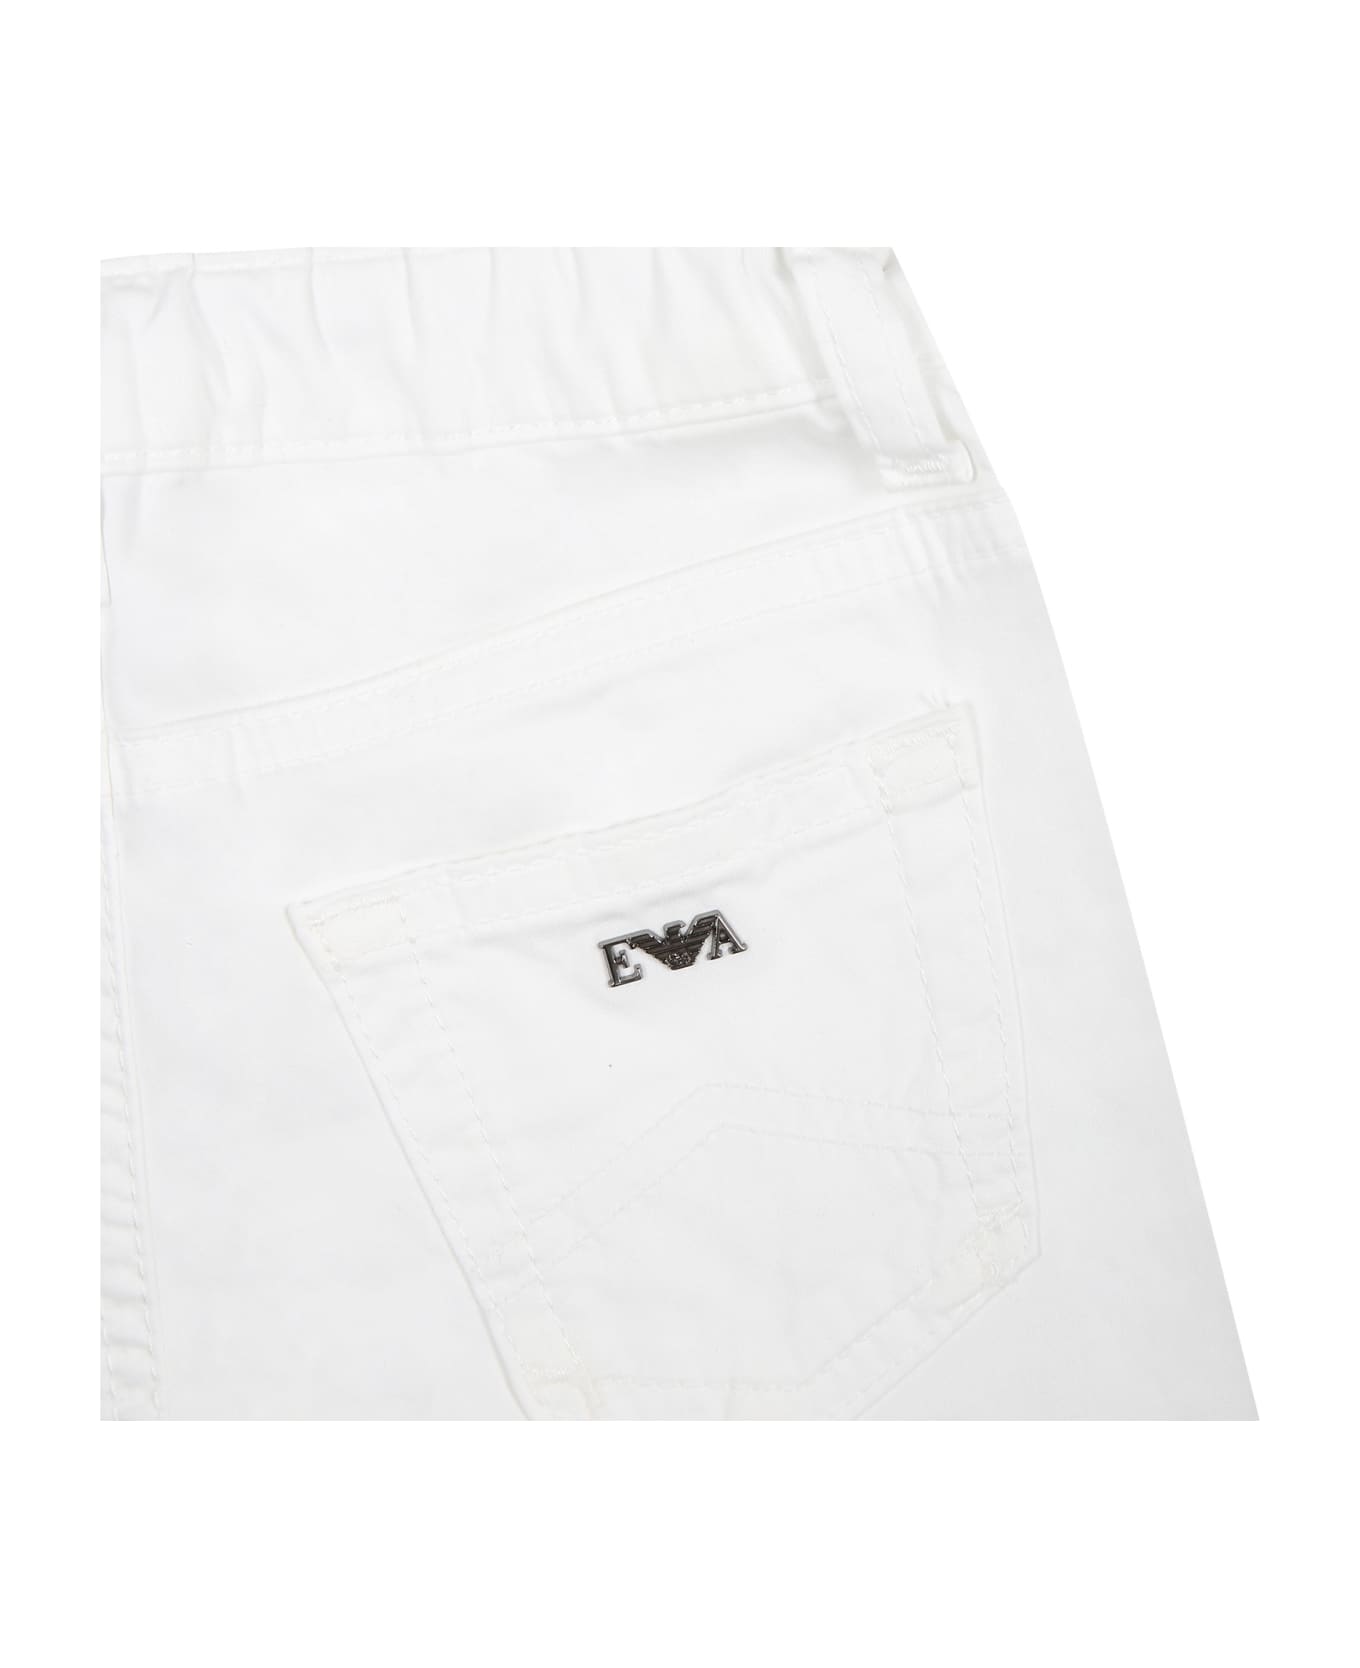 Emporio Armani White Trousers For Baby Boy With Logo - White